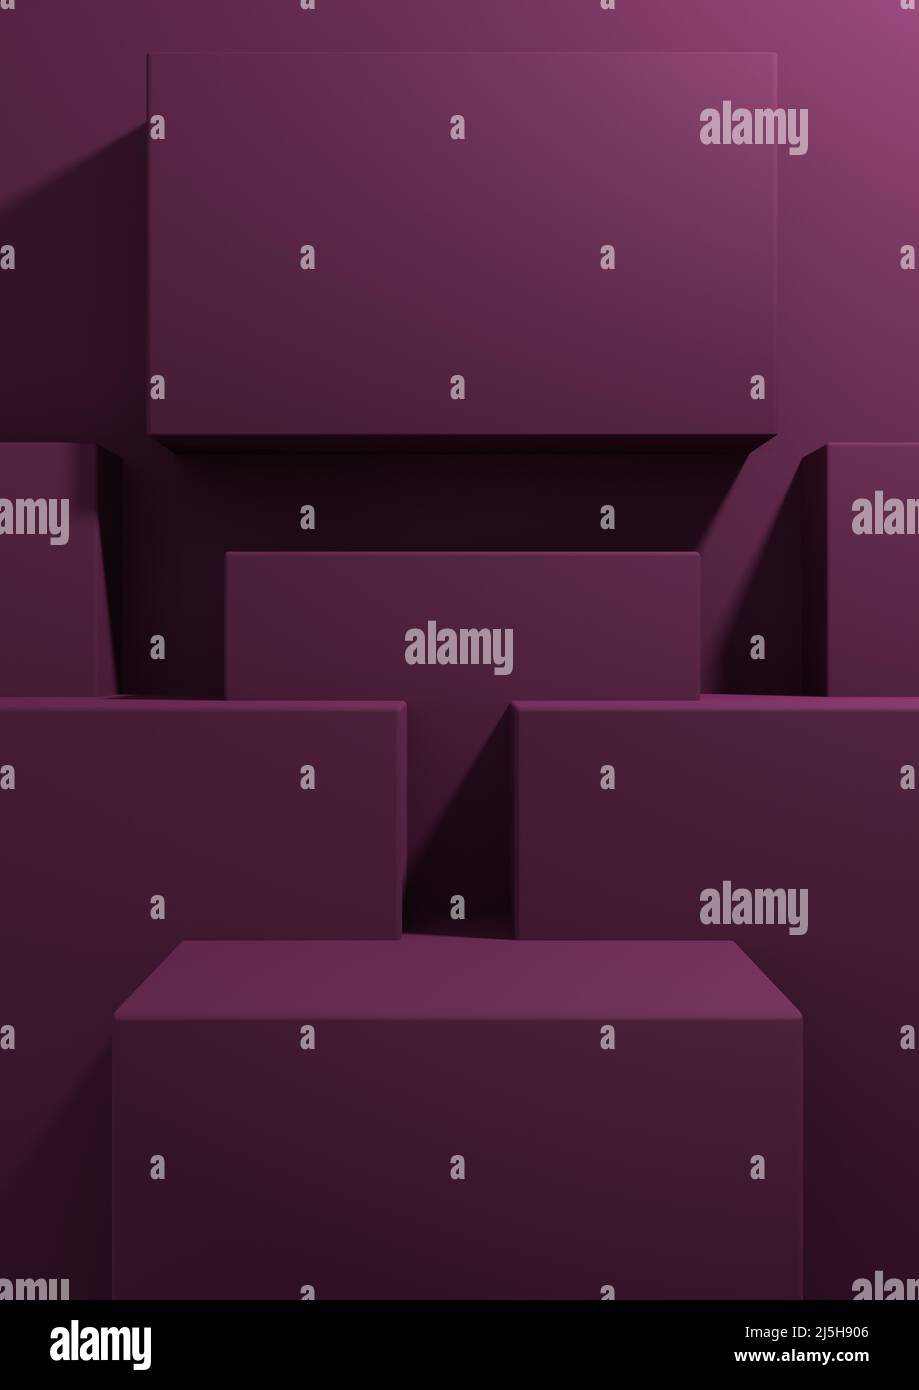 Magenta foncé, violet 3D rendu produit affichage fond d'écran simple, minimal, géométrique avec support podium pour la photographie de produit ou adverti Banque D'Images